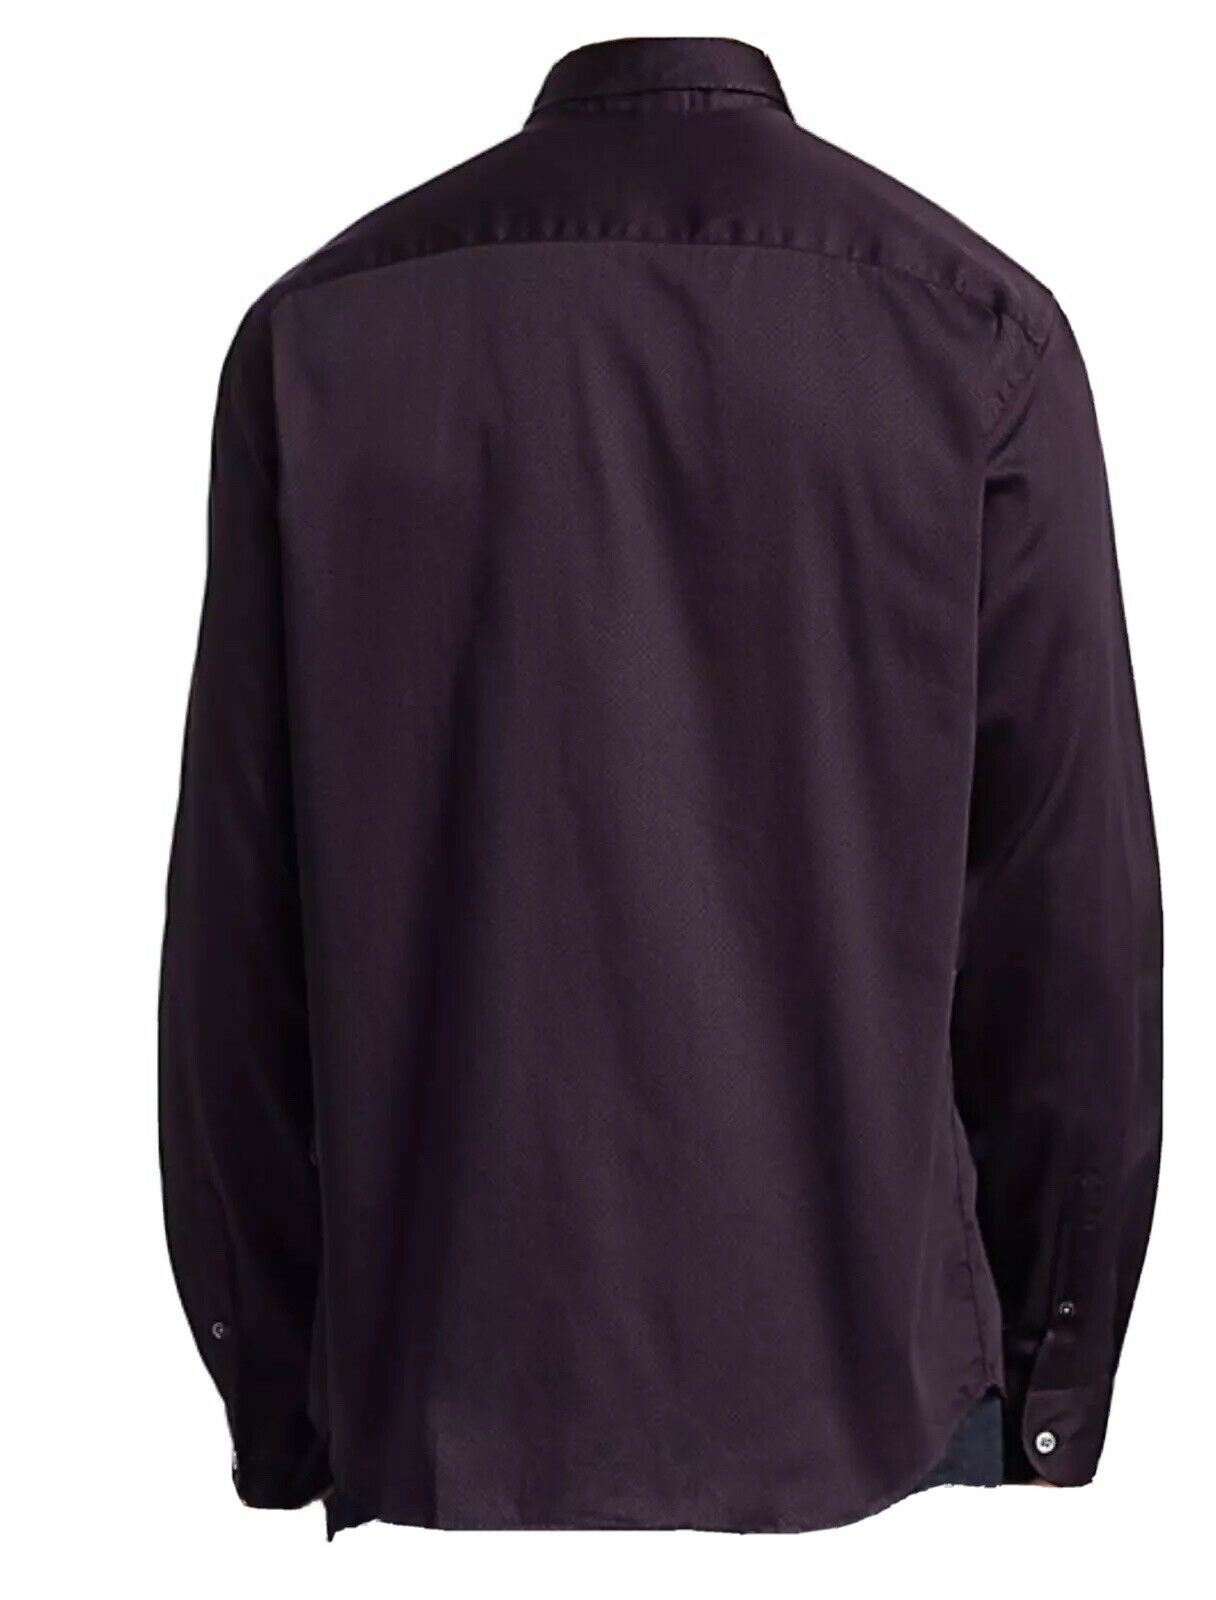 NWT $275 Emporio Armani Mens Mini Check Pattern Purple Shirt XL